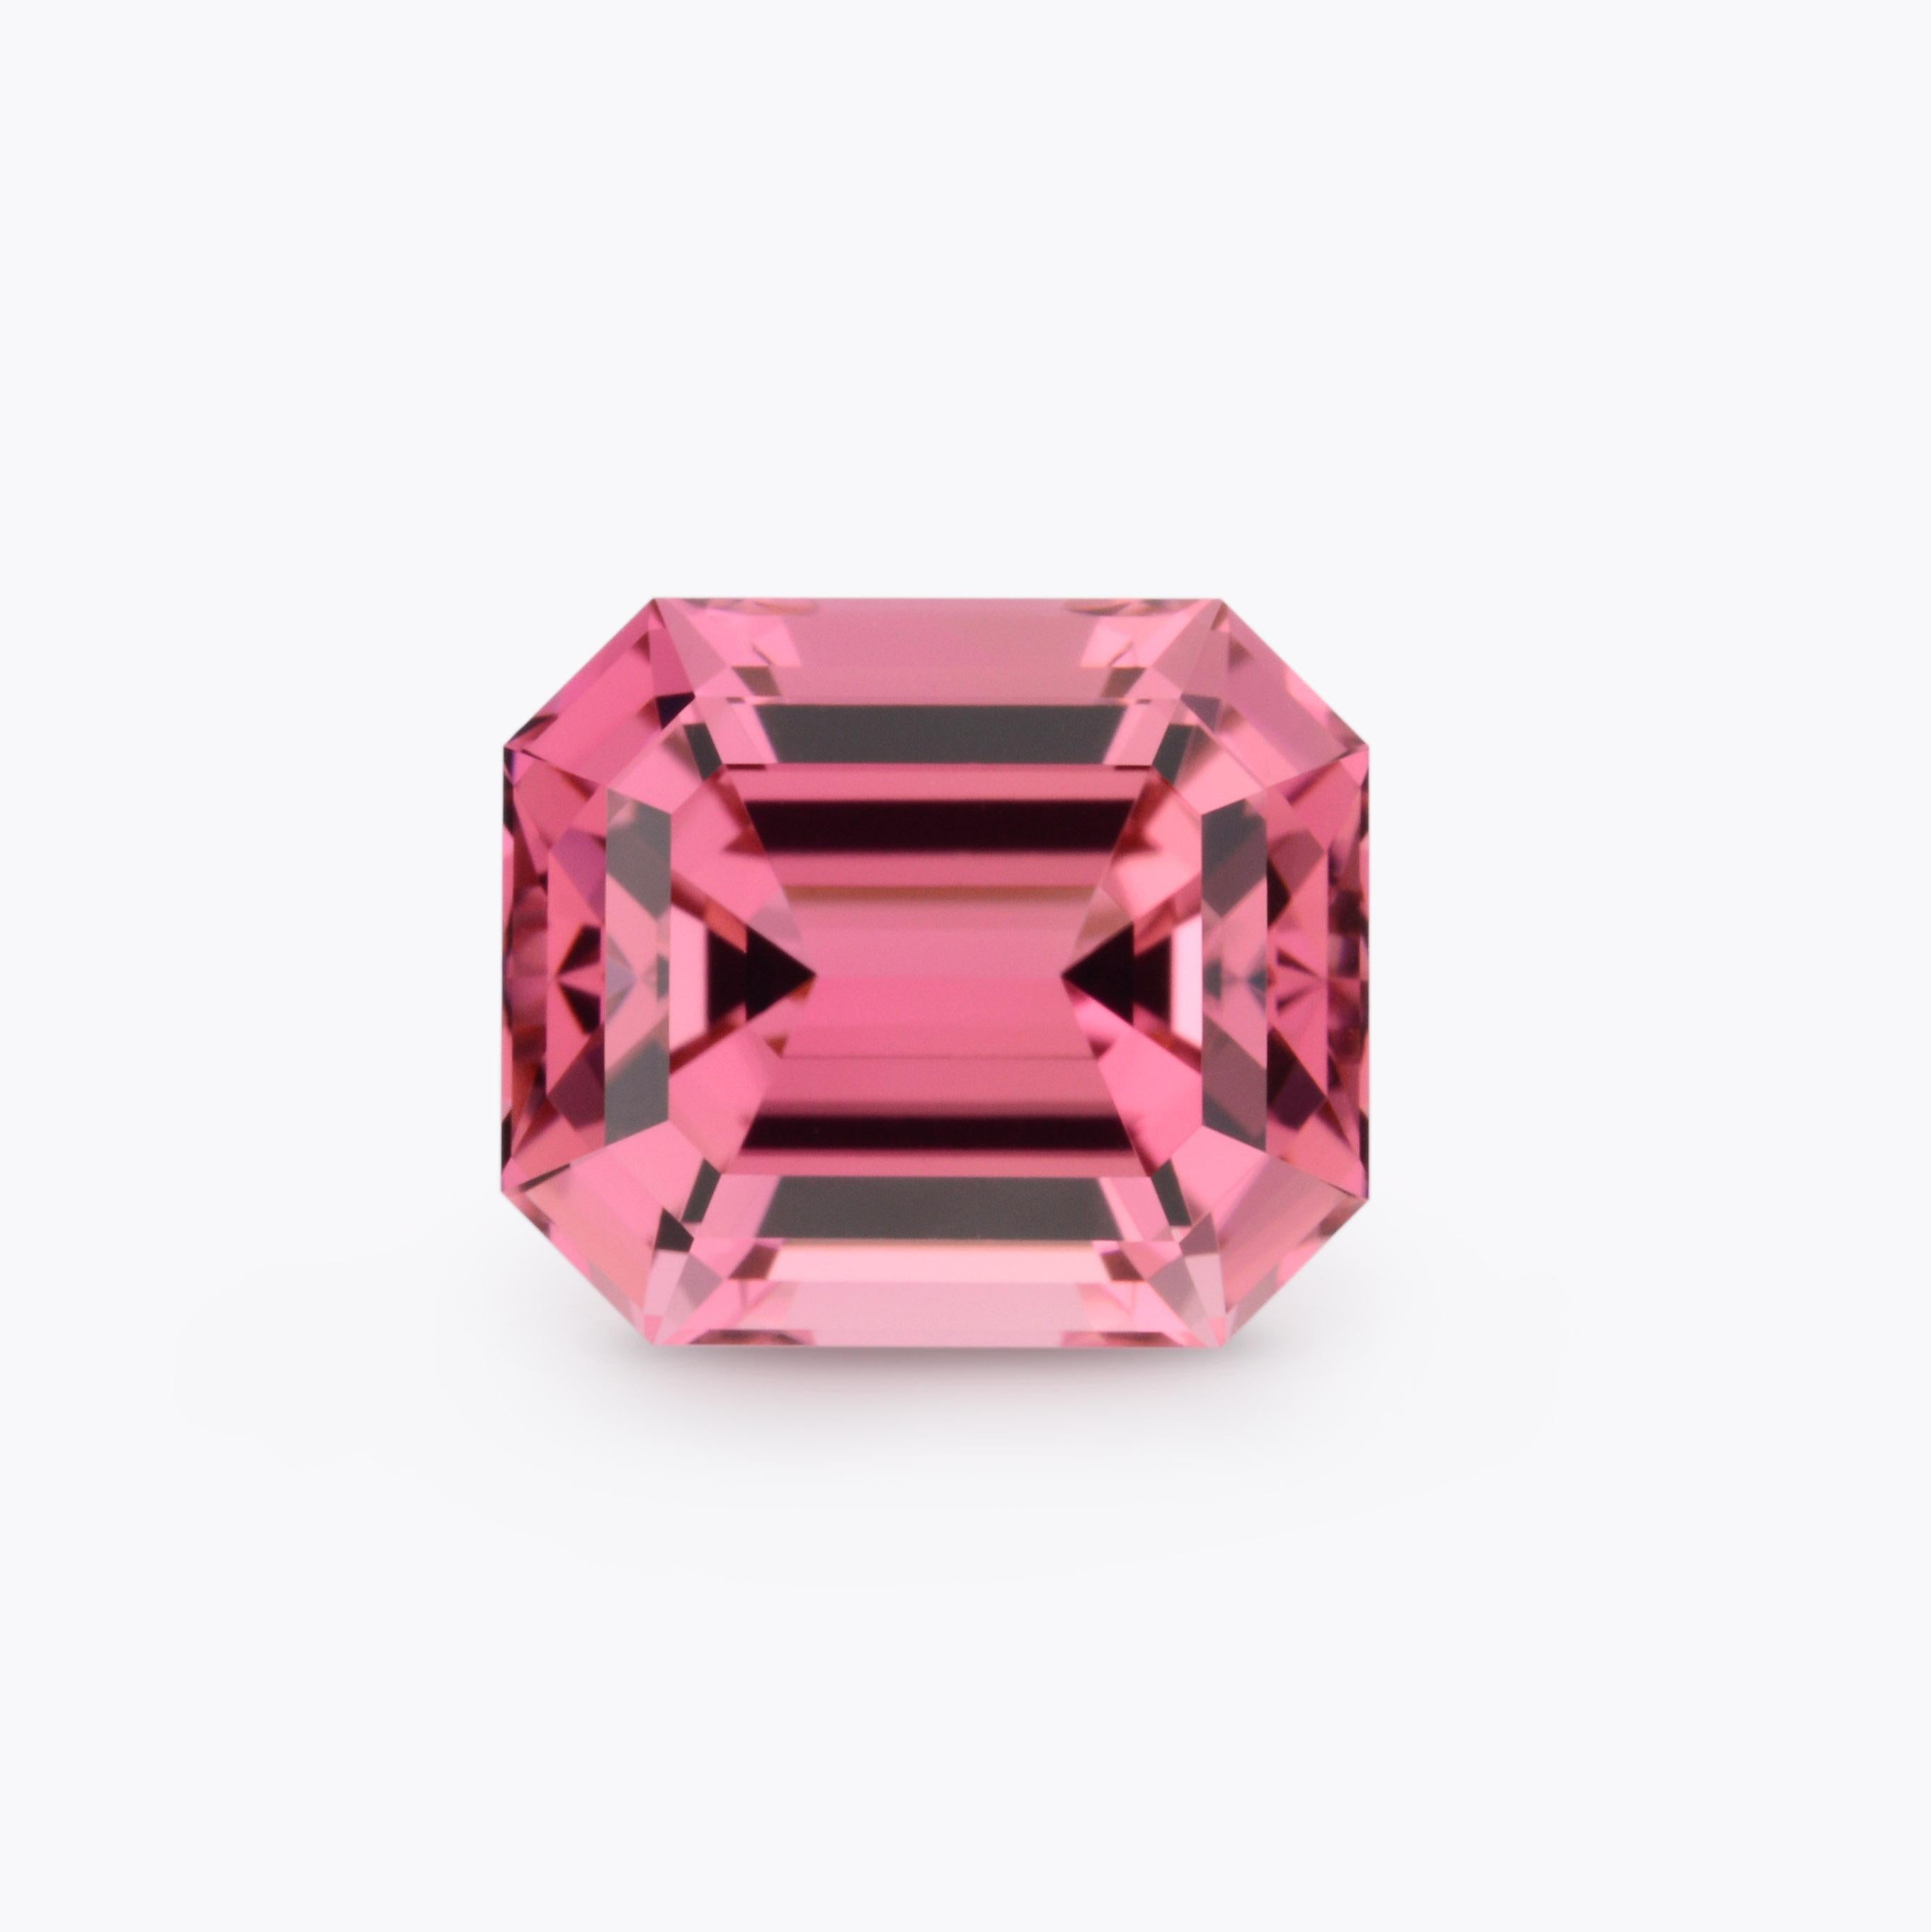 Splendide tourmaline rose de 4,15 carats taillée en émeraude, offerte non montée à une personne très spéciale.
Dimensions : 9,8 x 9,8 x 6,5 mm : 9,8 x 9,8 x 6,5 mm.
Les retours sont acceptés et pris en charge dans les sept jours suivant la